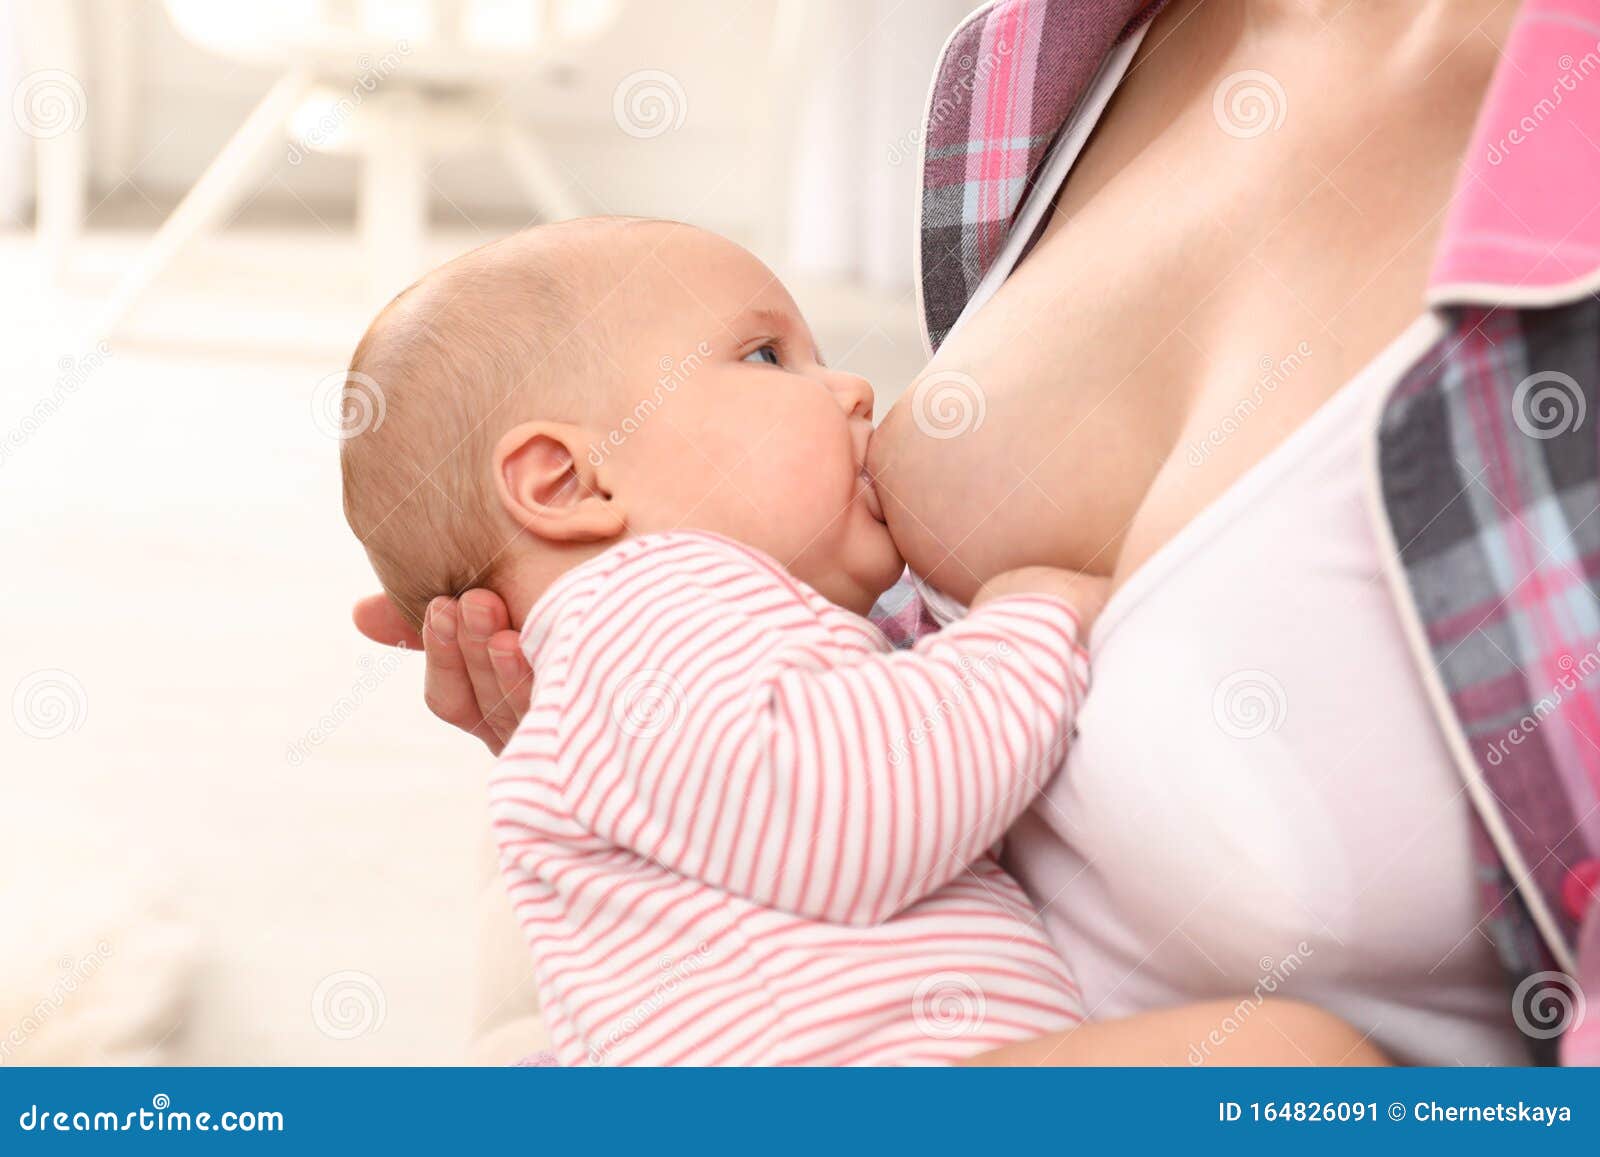 компресс на грудь кормящей мамы фото 110